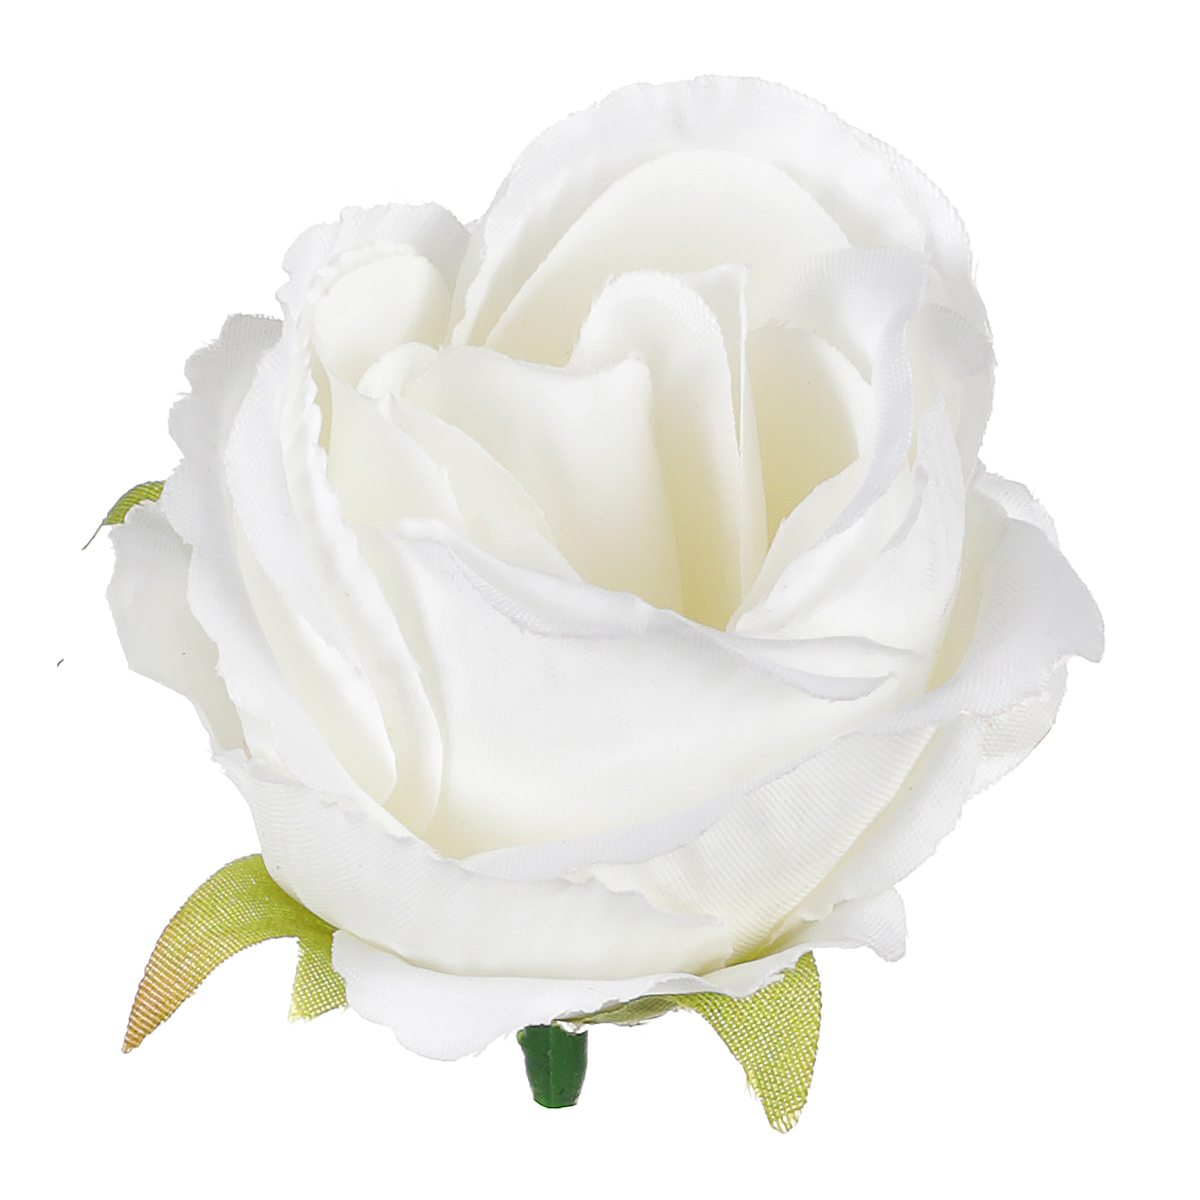 Růže, barva bílá. Květina umělá vazbová. Cena za balení 12 kusů.